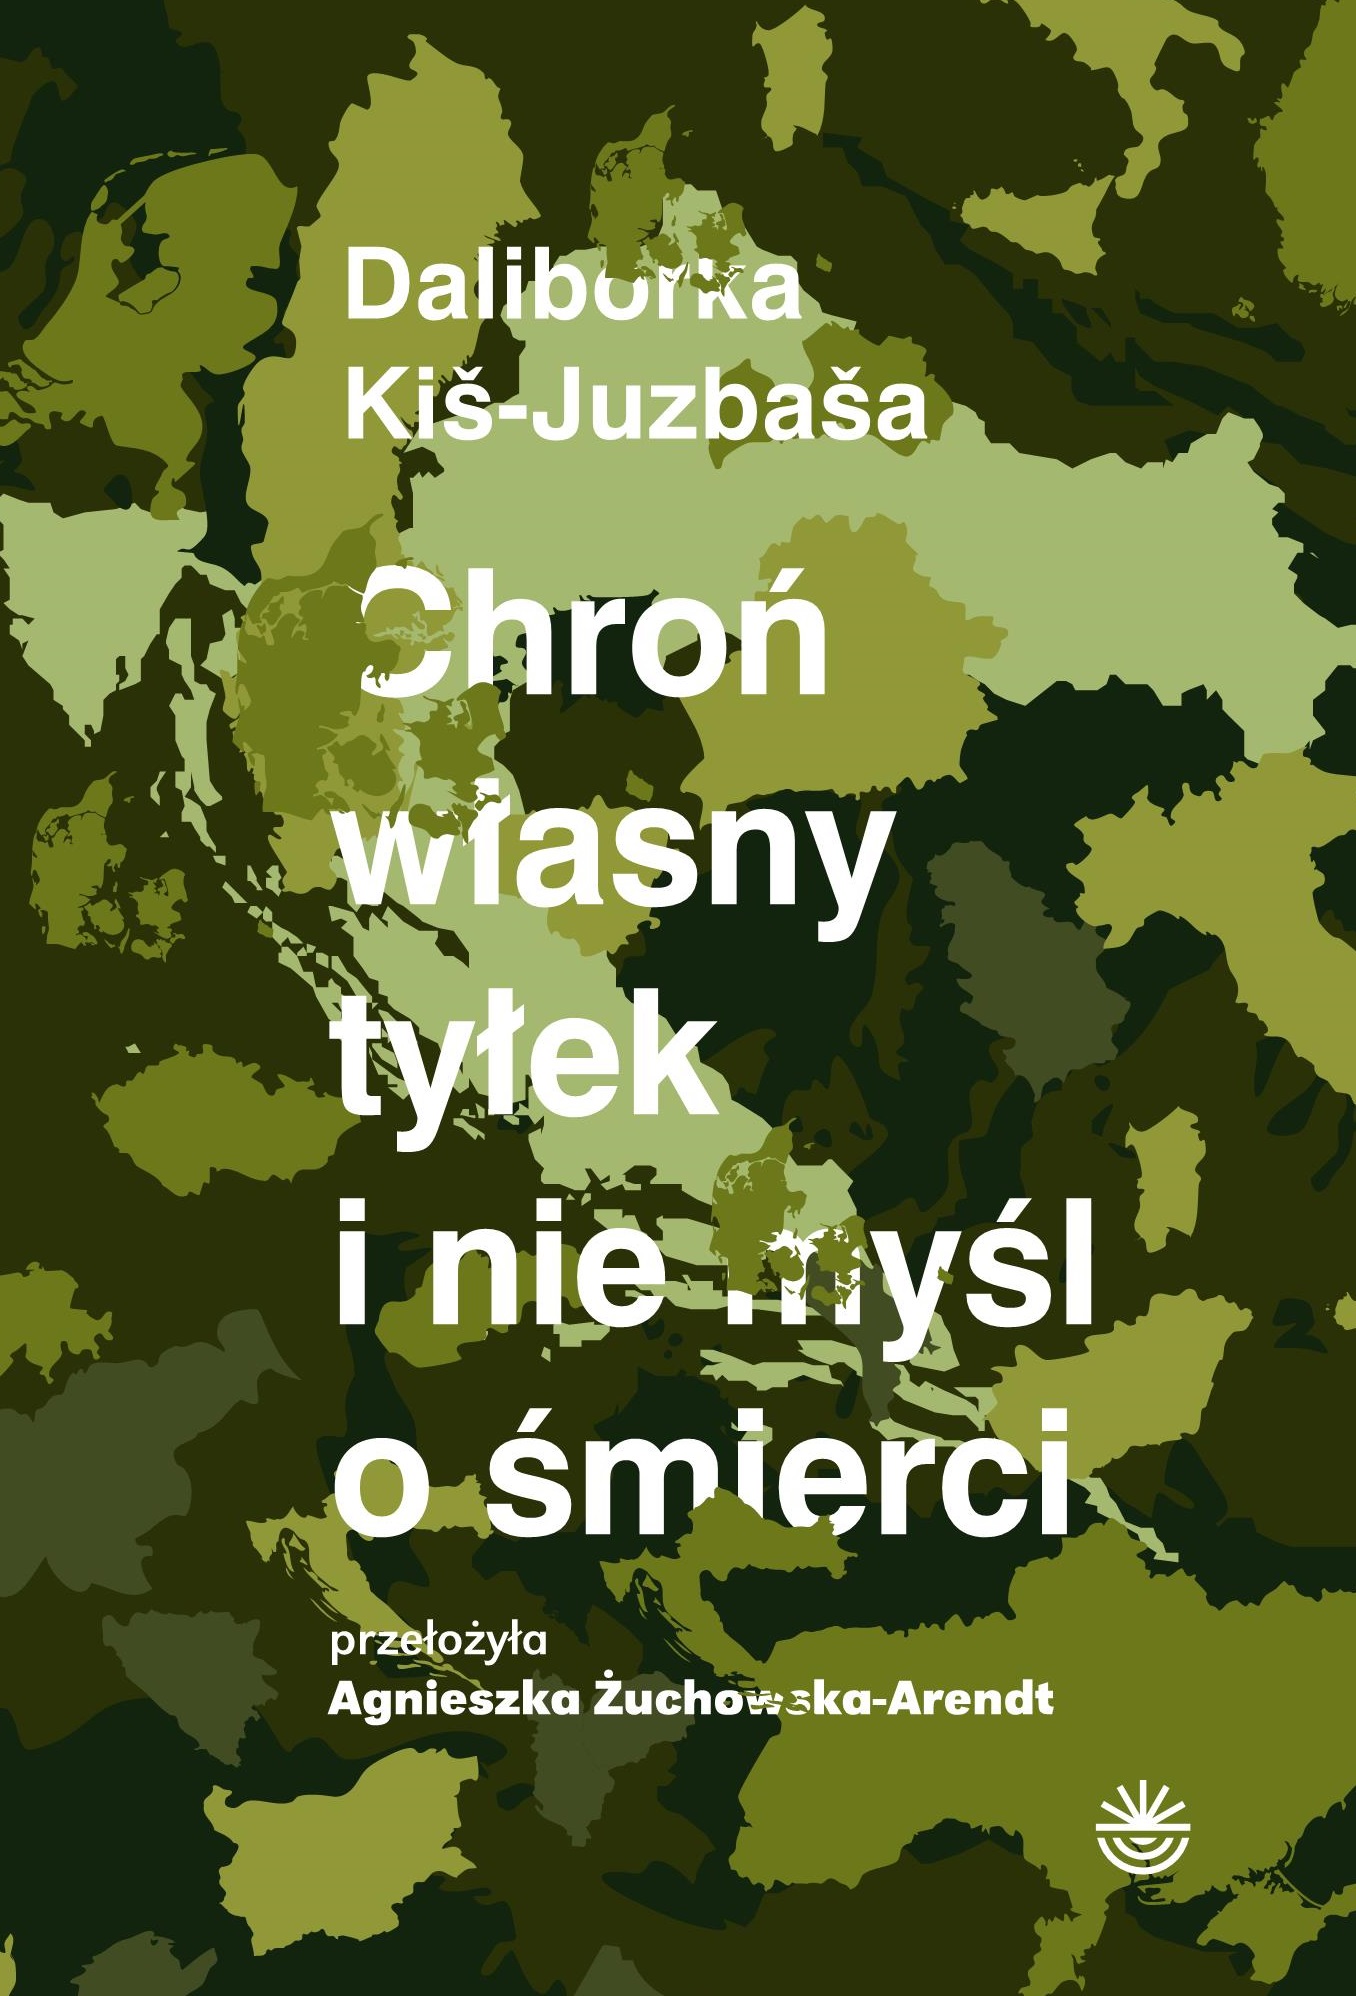 okładka książki Kiš-Juzbaša Daliborki pt. Chroń własny tyłek i nie myśl o śmierci